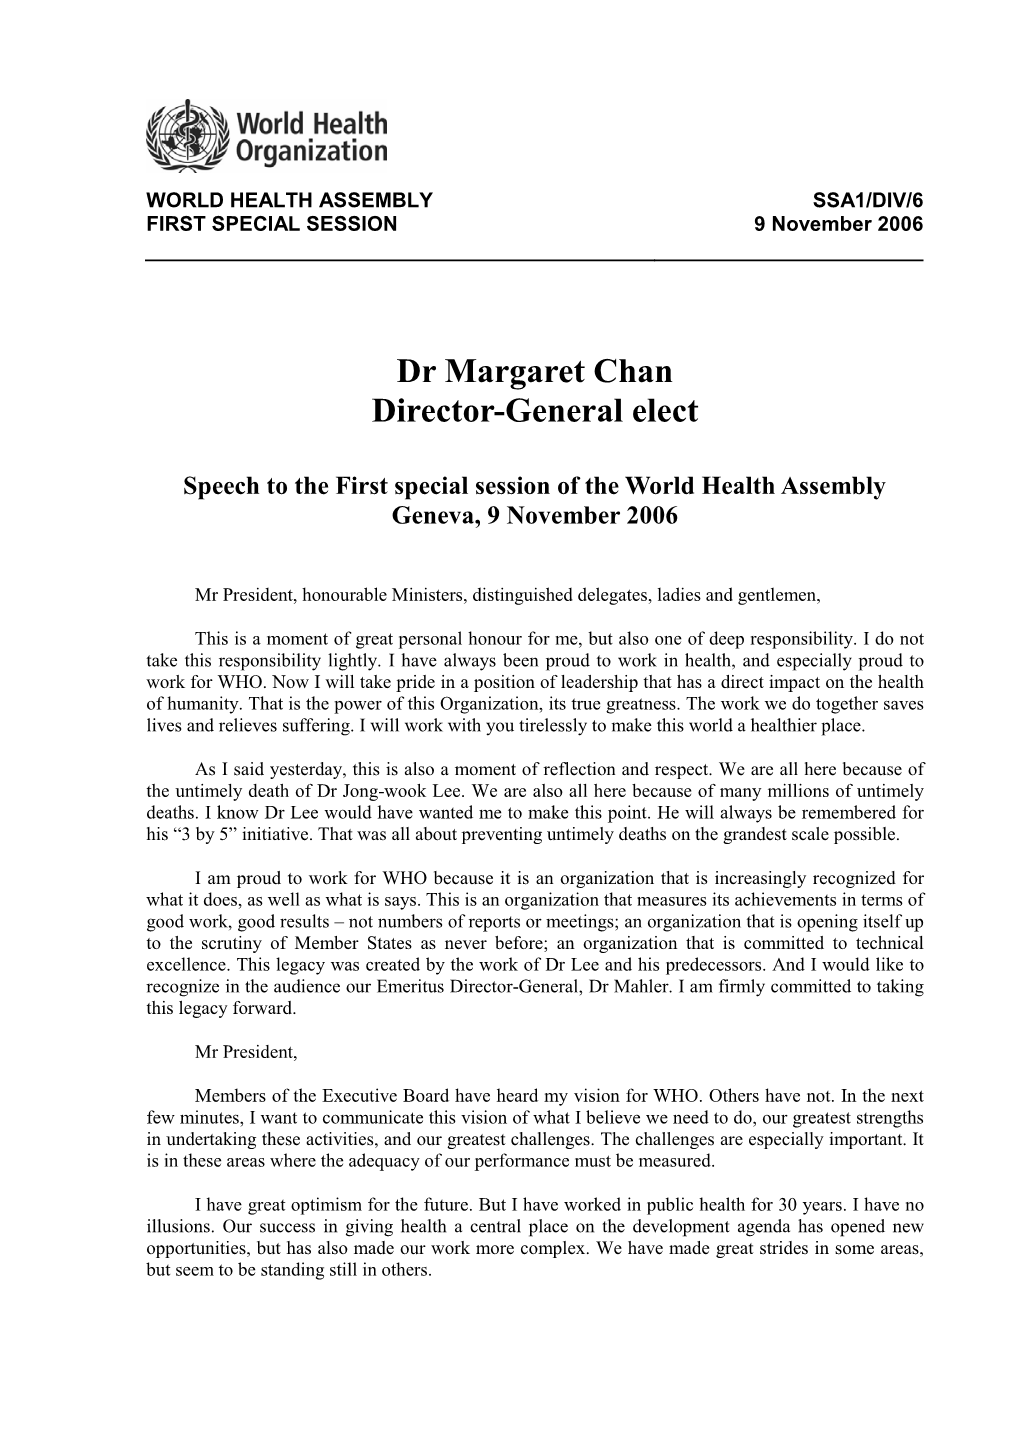 Dr Margaret Chan Director-General Elect